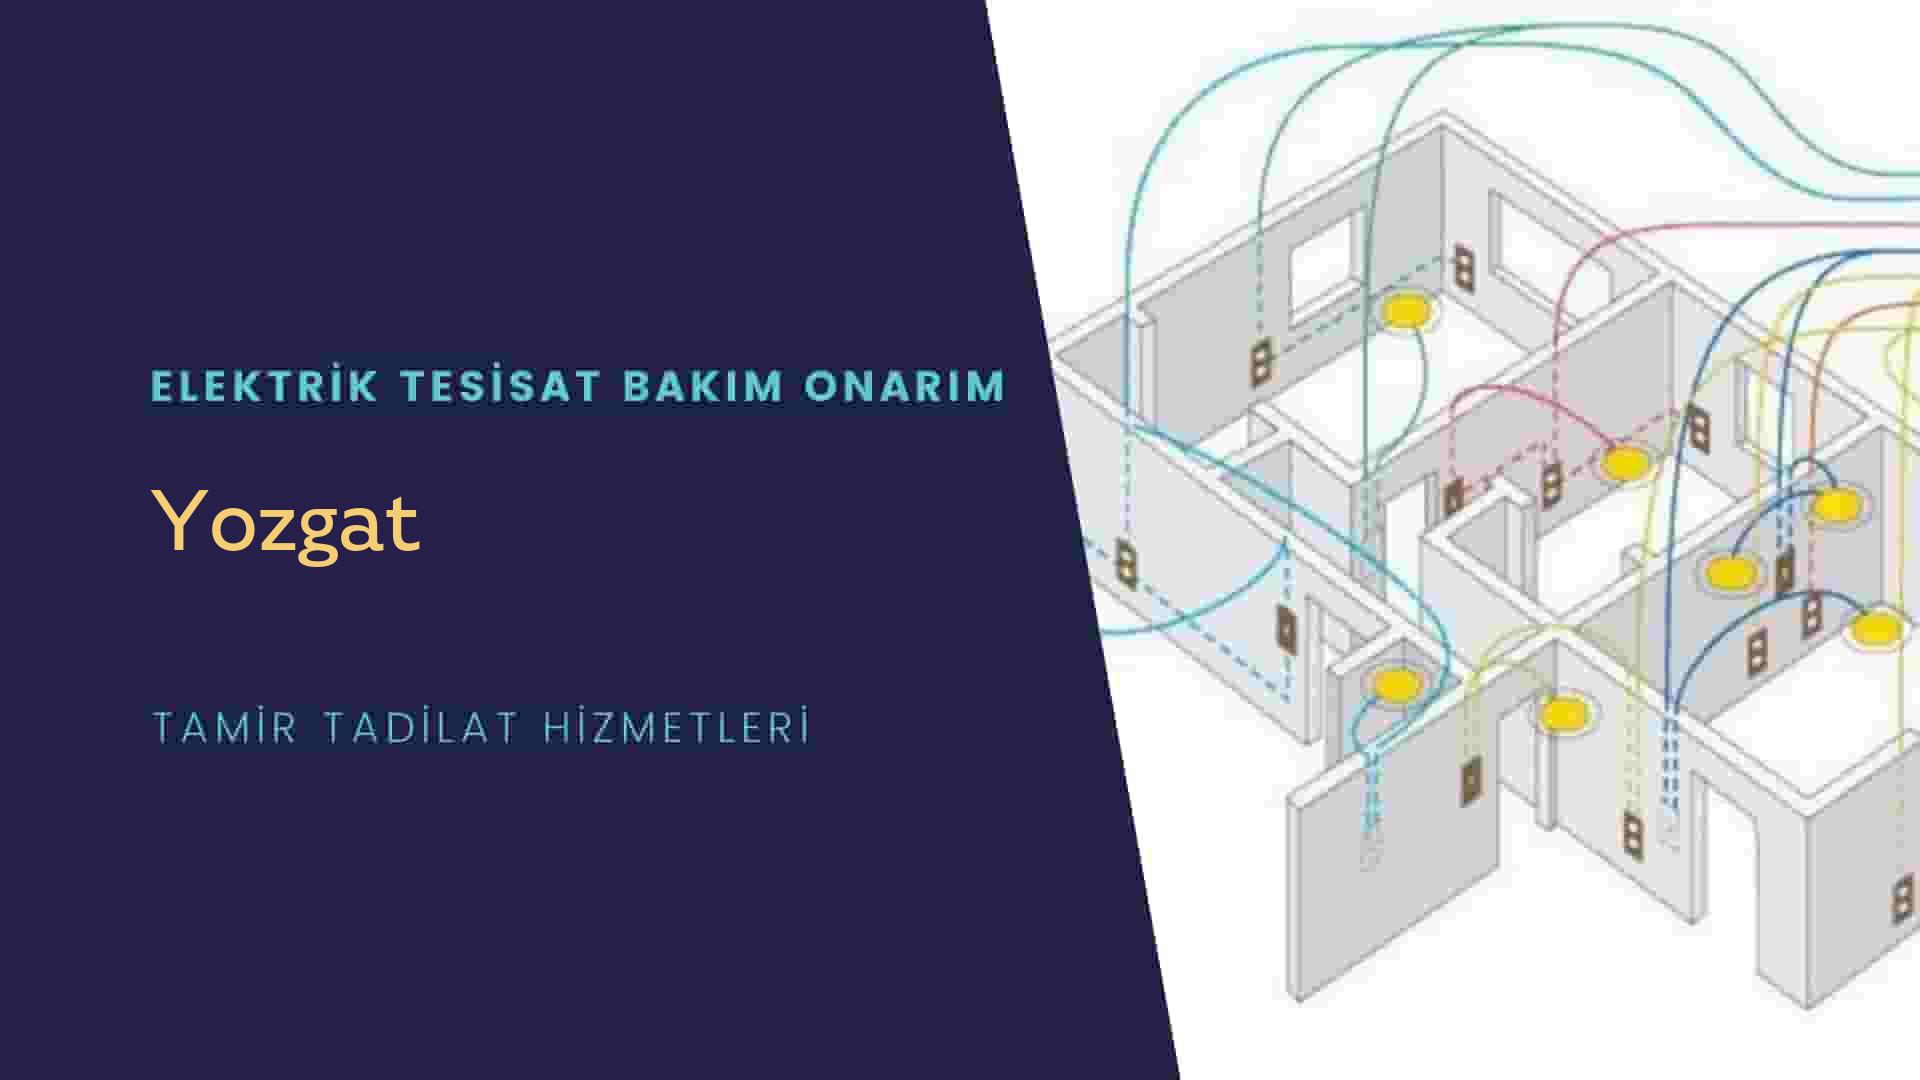 Yozgat'ta elektrik tesisatı ustalarımı arıyorsunuz doğru adrestenizi Yozgat elektrik tesisatı ustalarımız 7/24 sizlere hizmet vermekten mutluluk duyar.